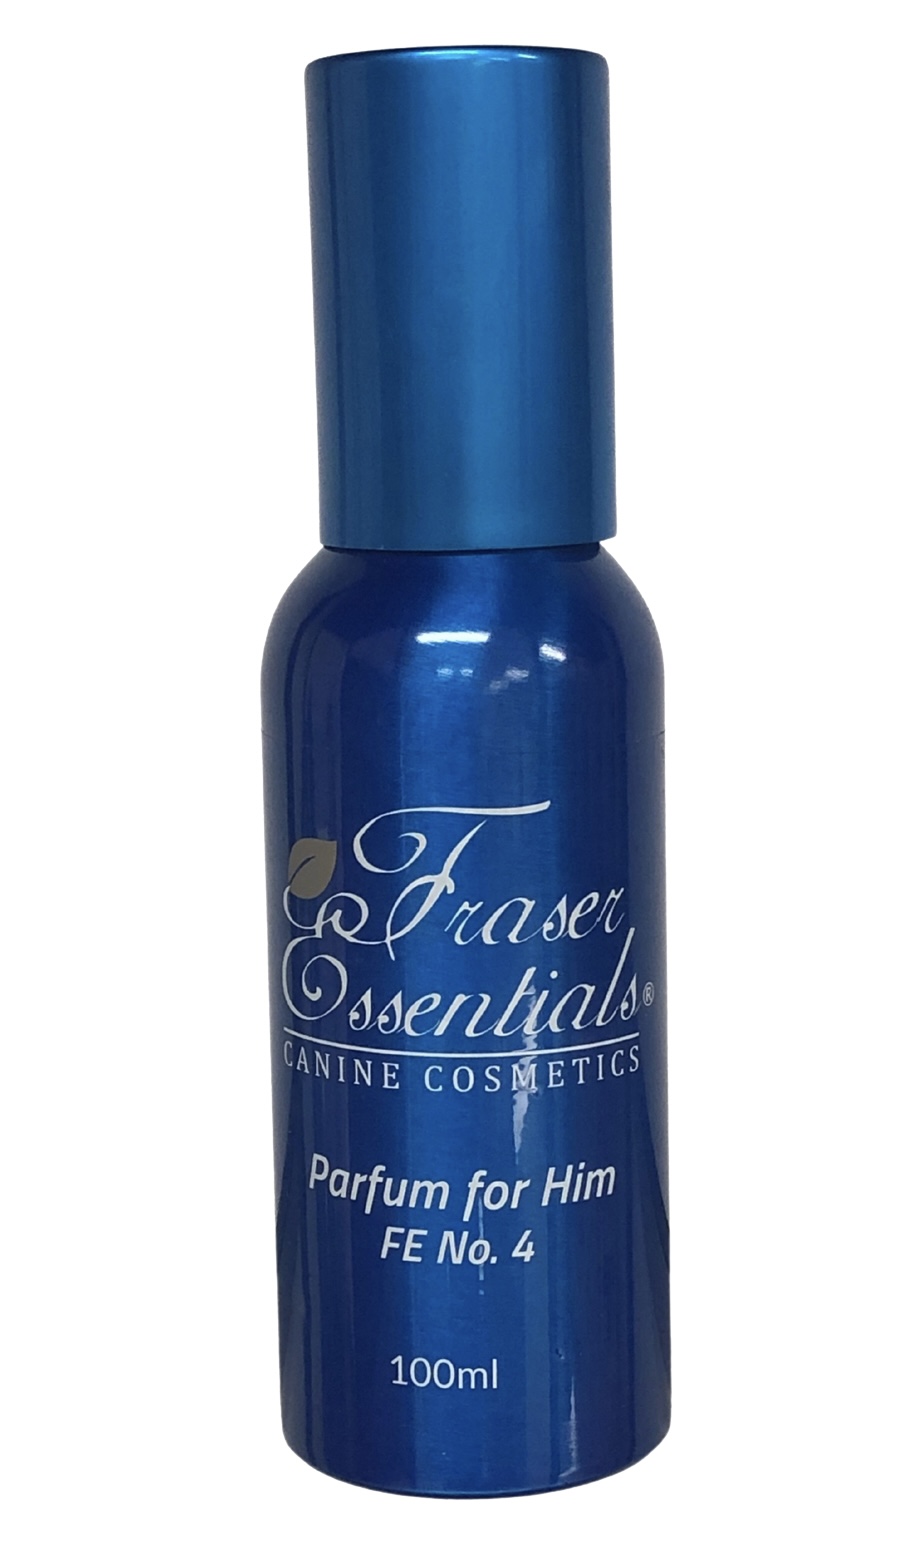 Fraser Essentials Parfum FE No 4 for Him 100ml